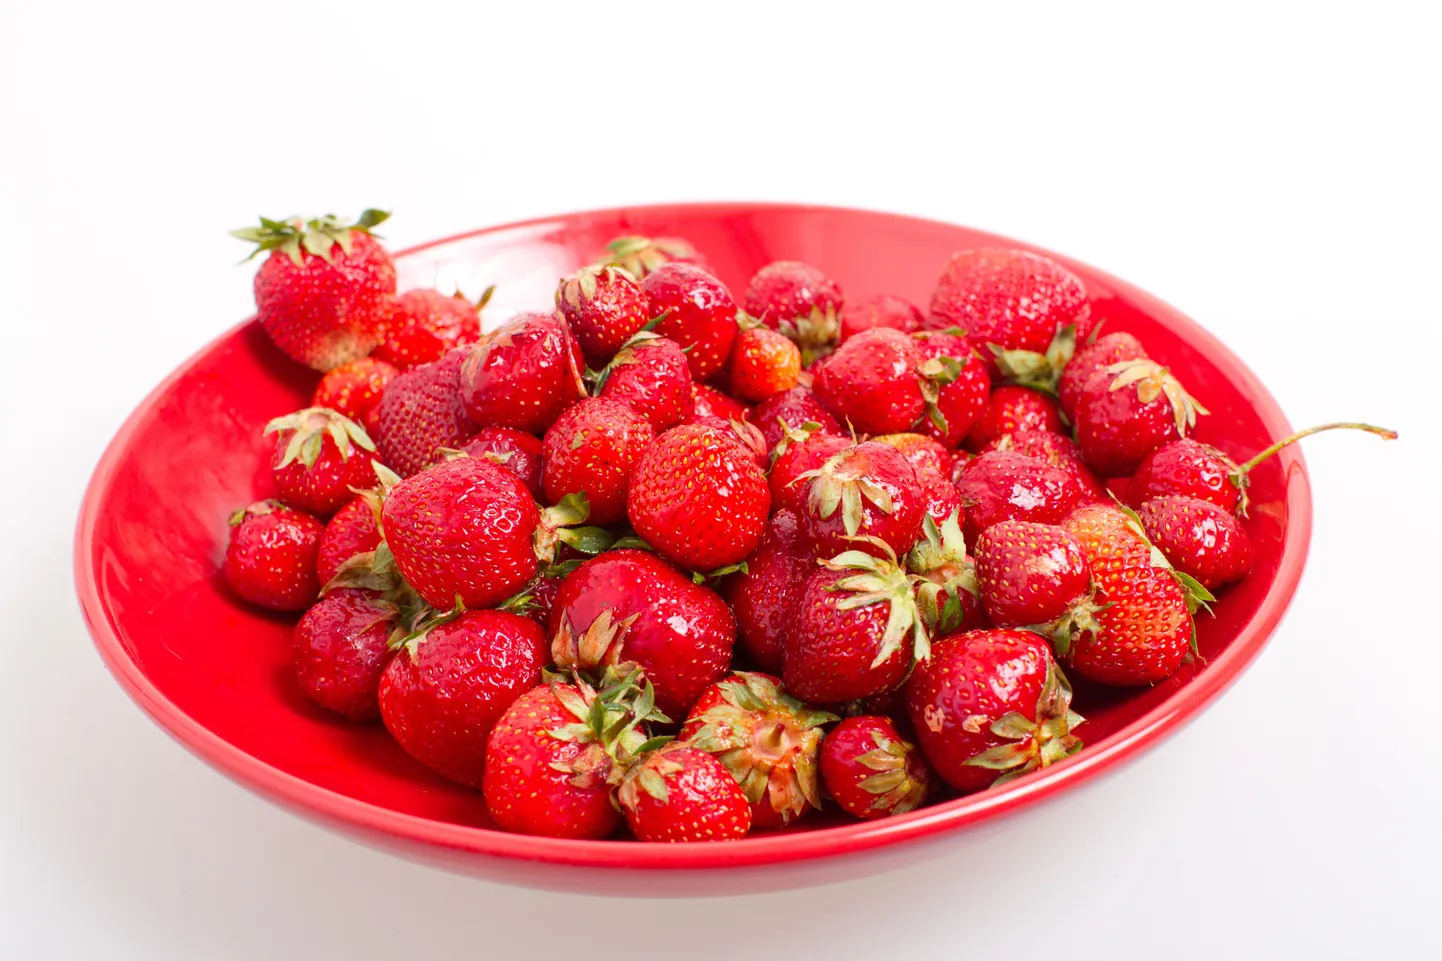 Eesti maasikad, ostetud keskturult 14.juuni 2013 kilohinnaga 3.50